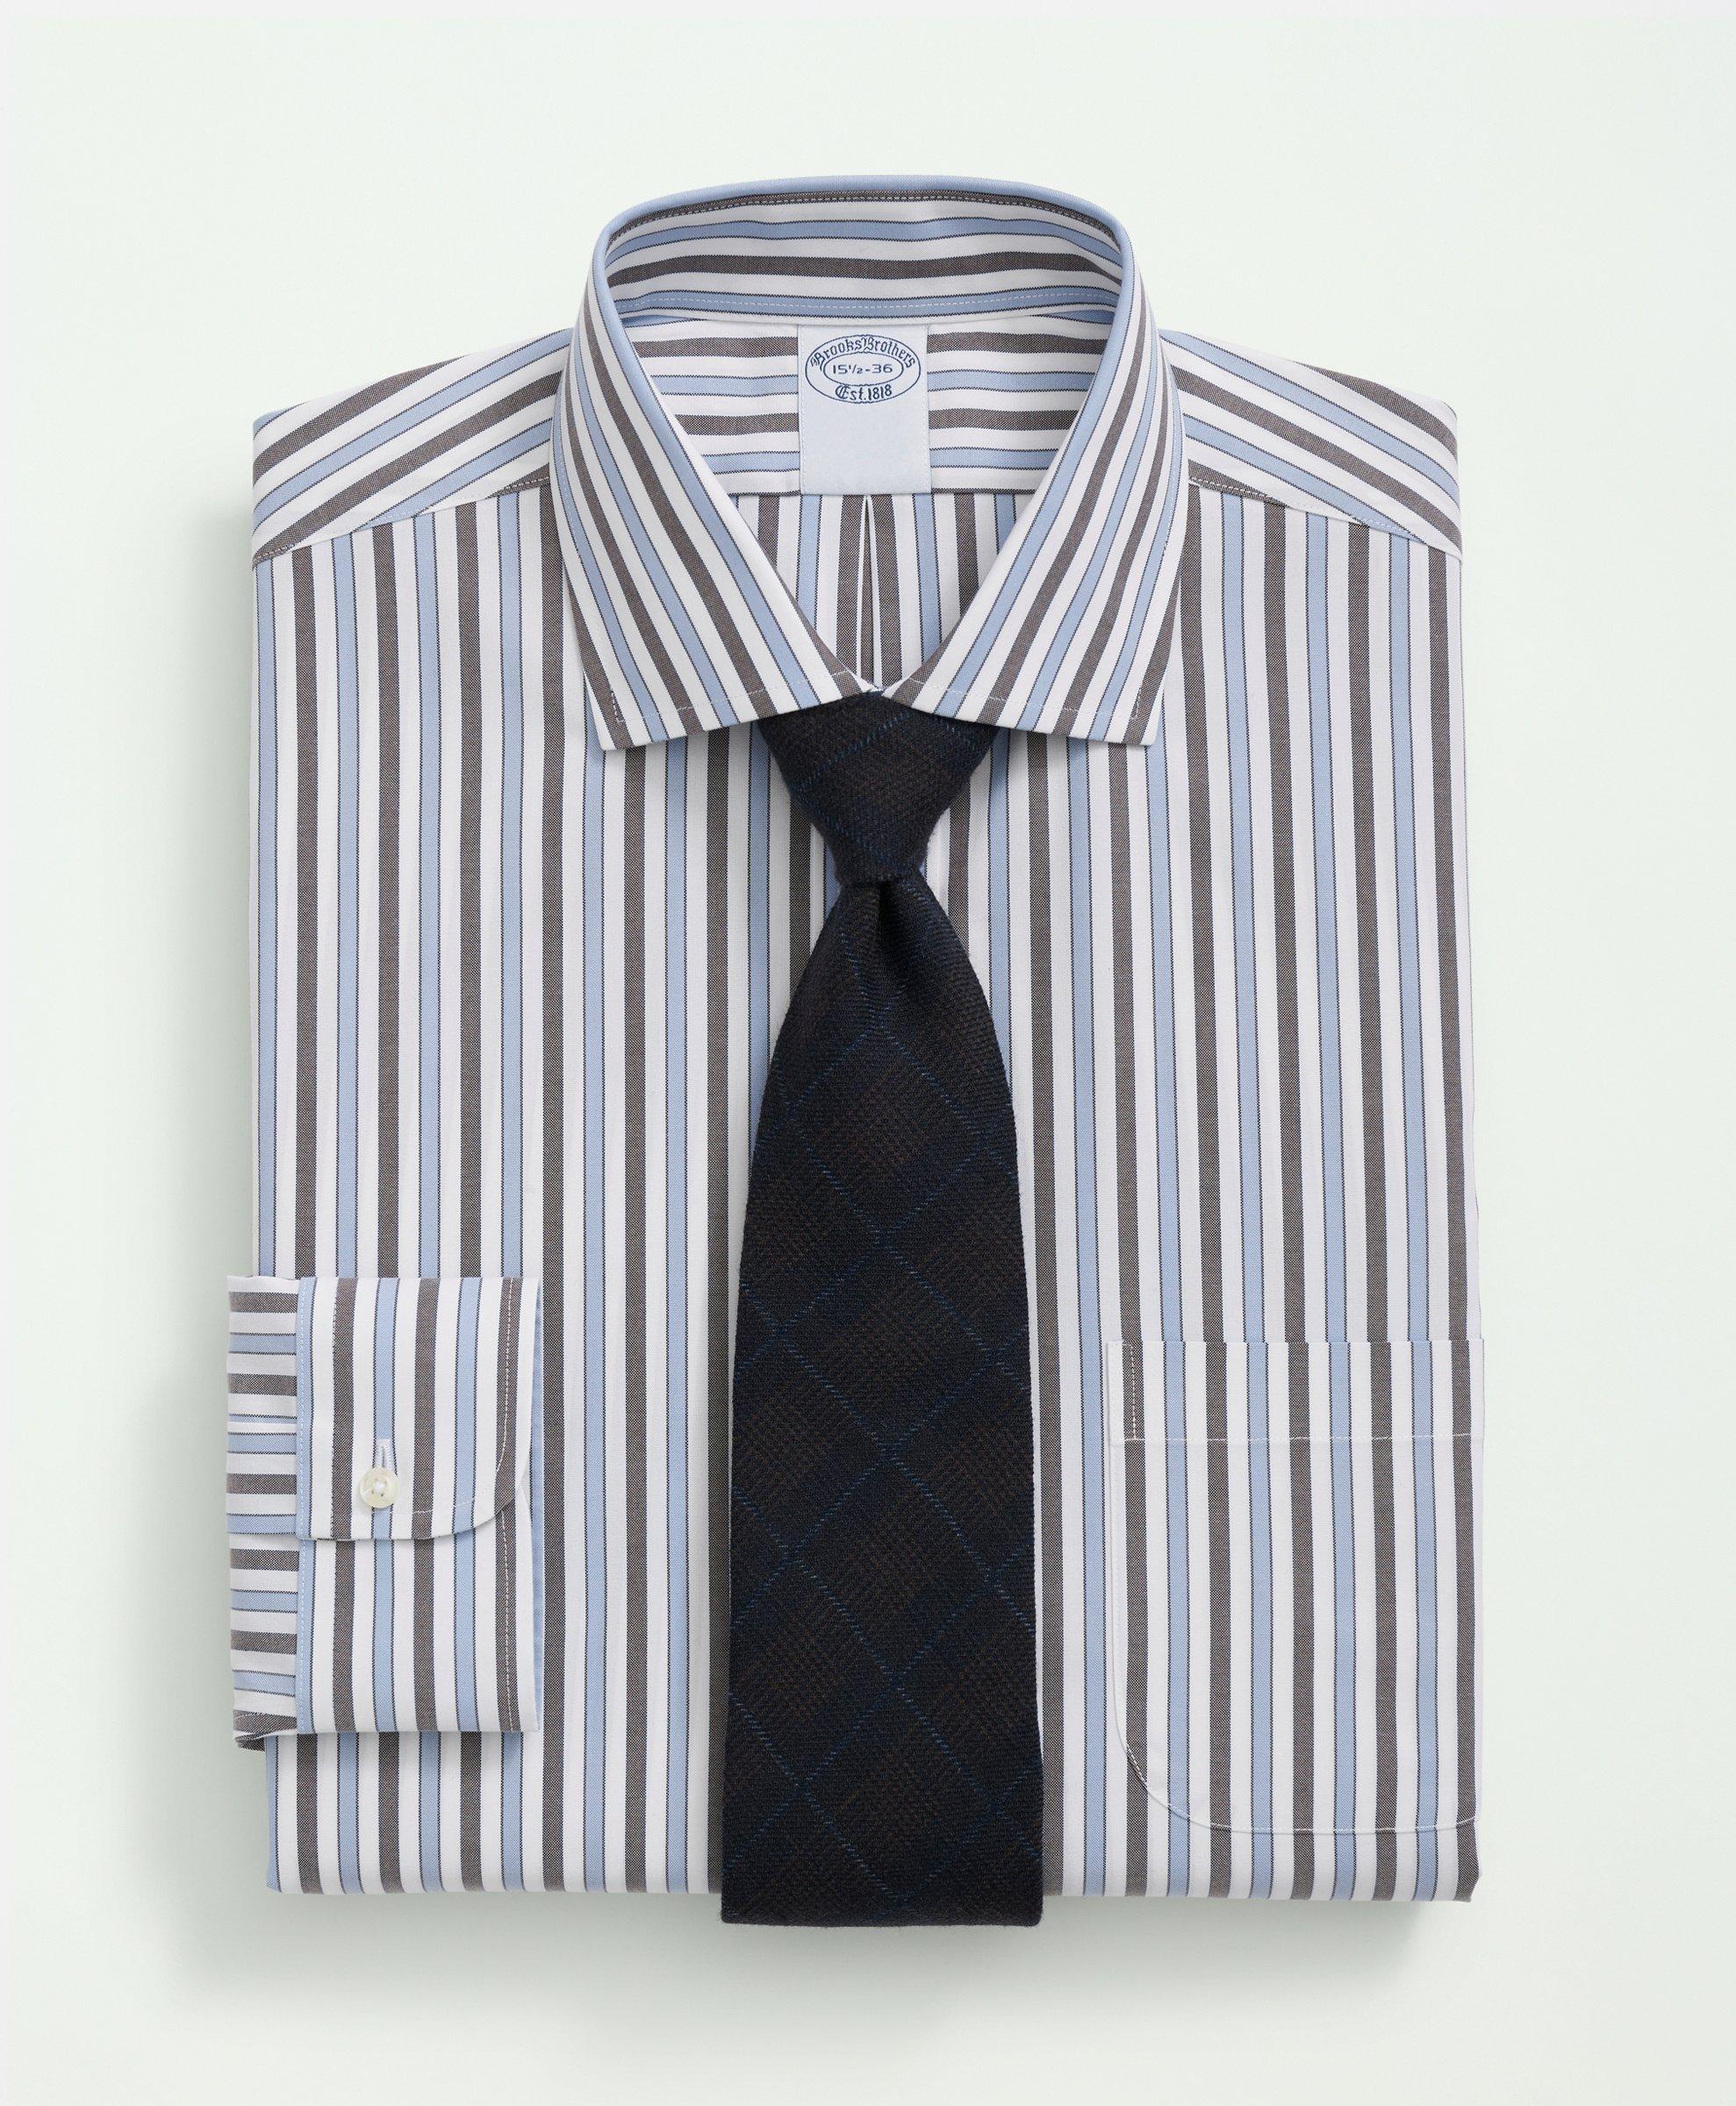 STOBAZA 300pcs Shirt Collar Pin Collar Stiffeners Shirts for Men